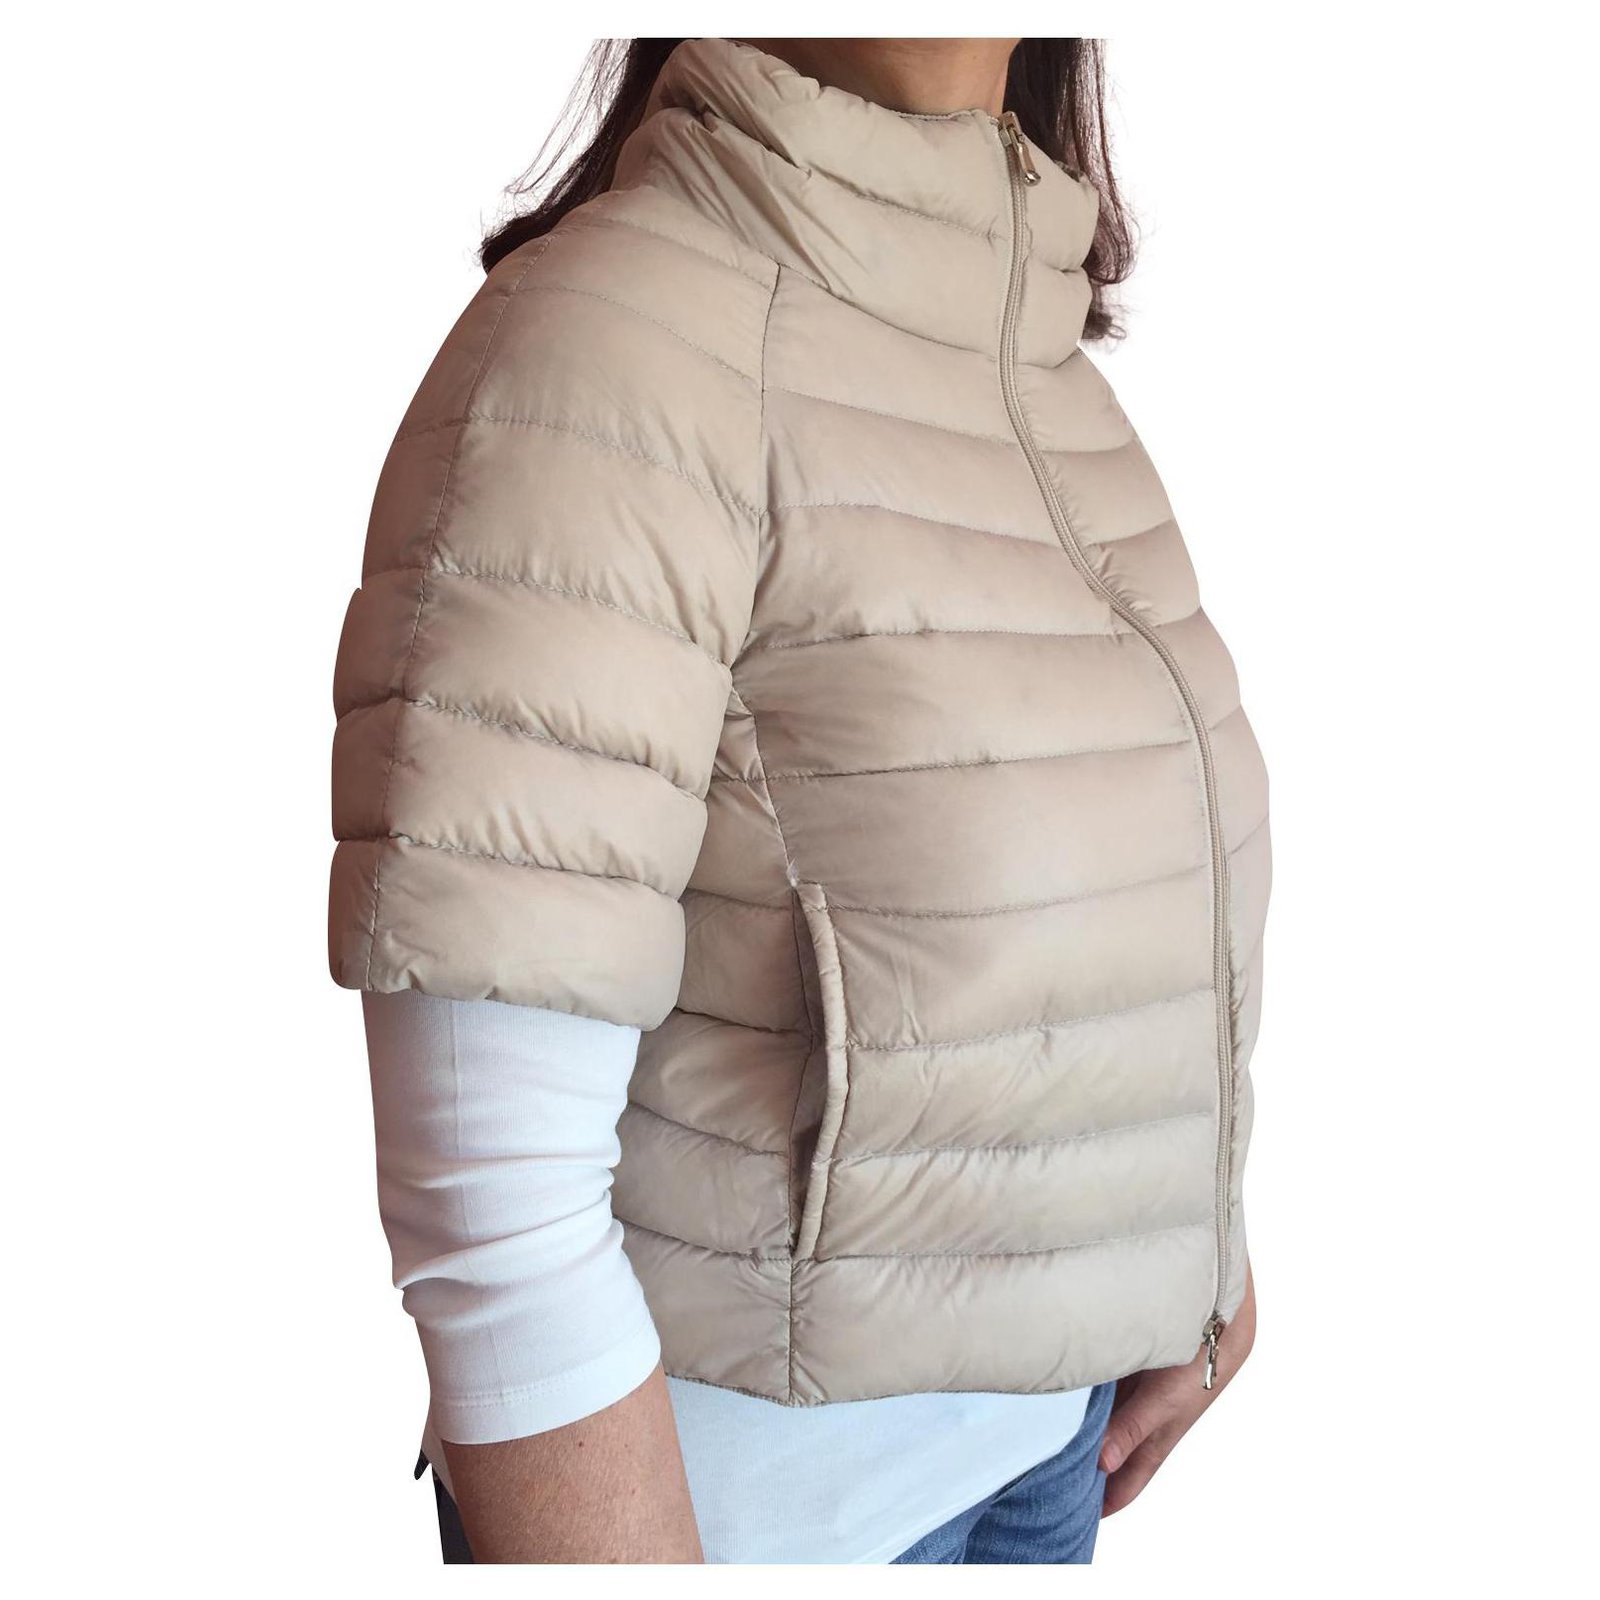 short sleeve puffer jacket women's